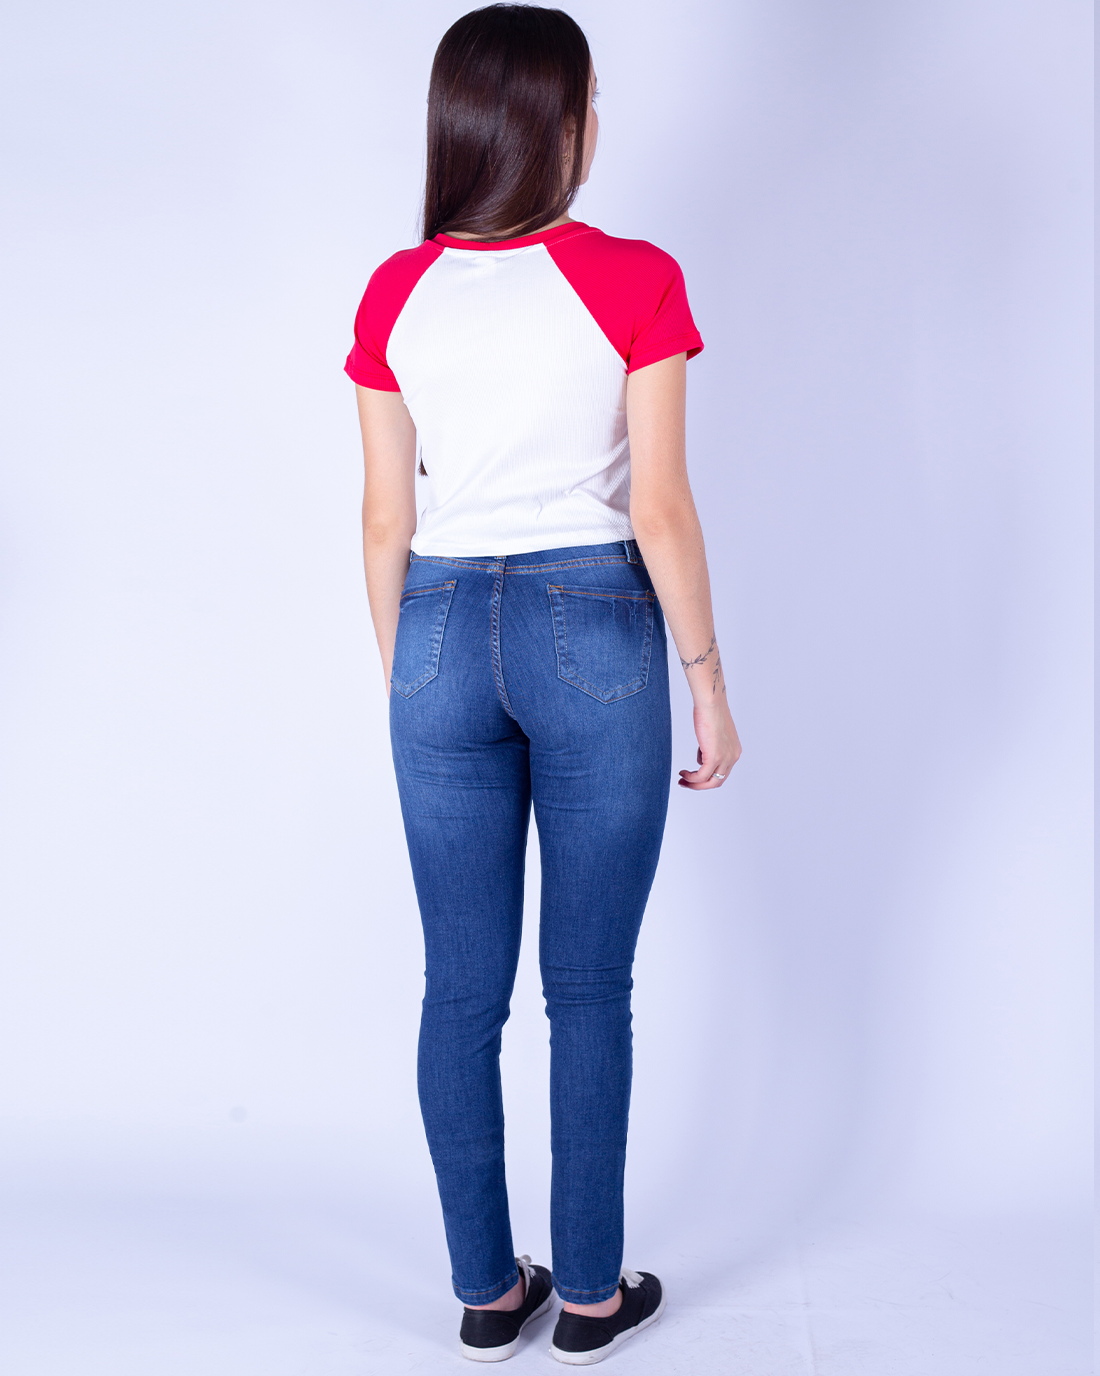 badcat - Seu jeans preferido é badcat! ❤️ Skinny, cintura alta, com faixa  na lateral, Flare! Modelos para todos os momentos da sua vida!  ❤️#badcatOriginal #badcatForever Compre online: www.badcat.com.br